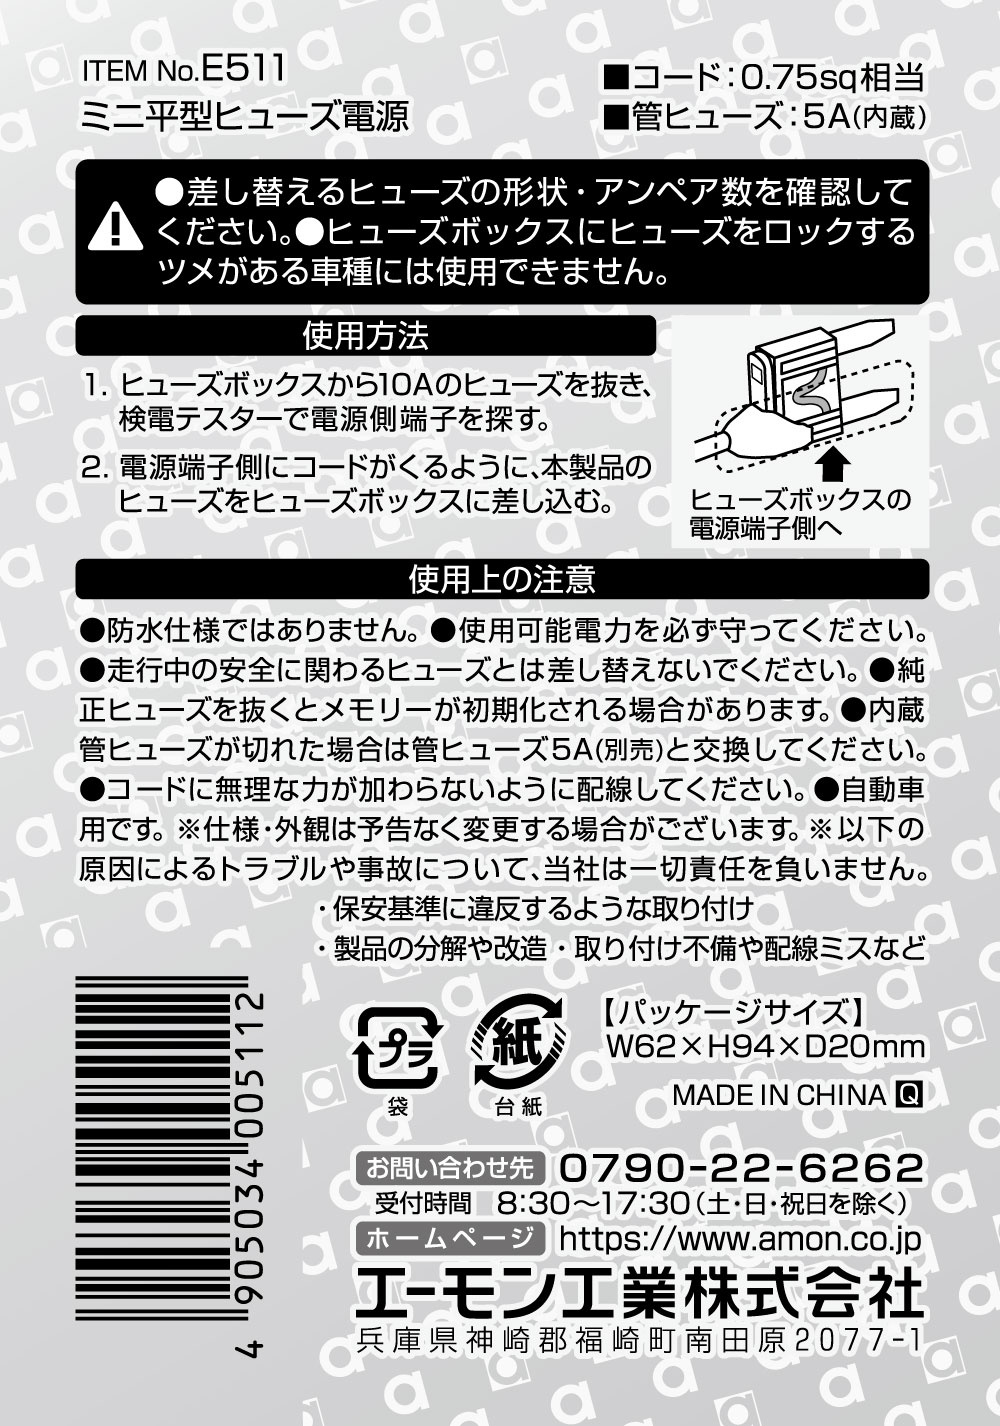 日本精工 M-FHT31 メガトルクモーター 別売り品 ハンディターミナル NSK - 1